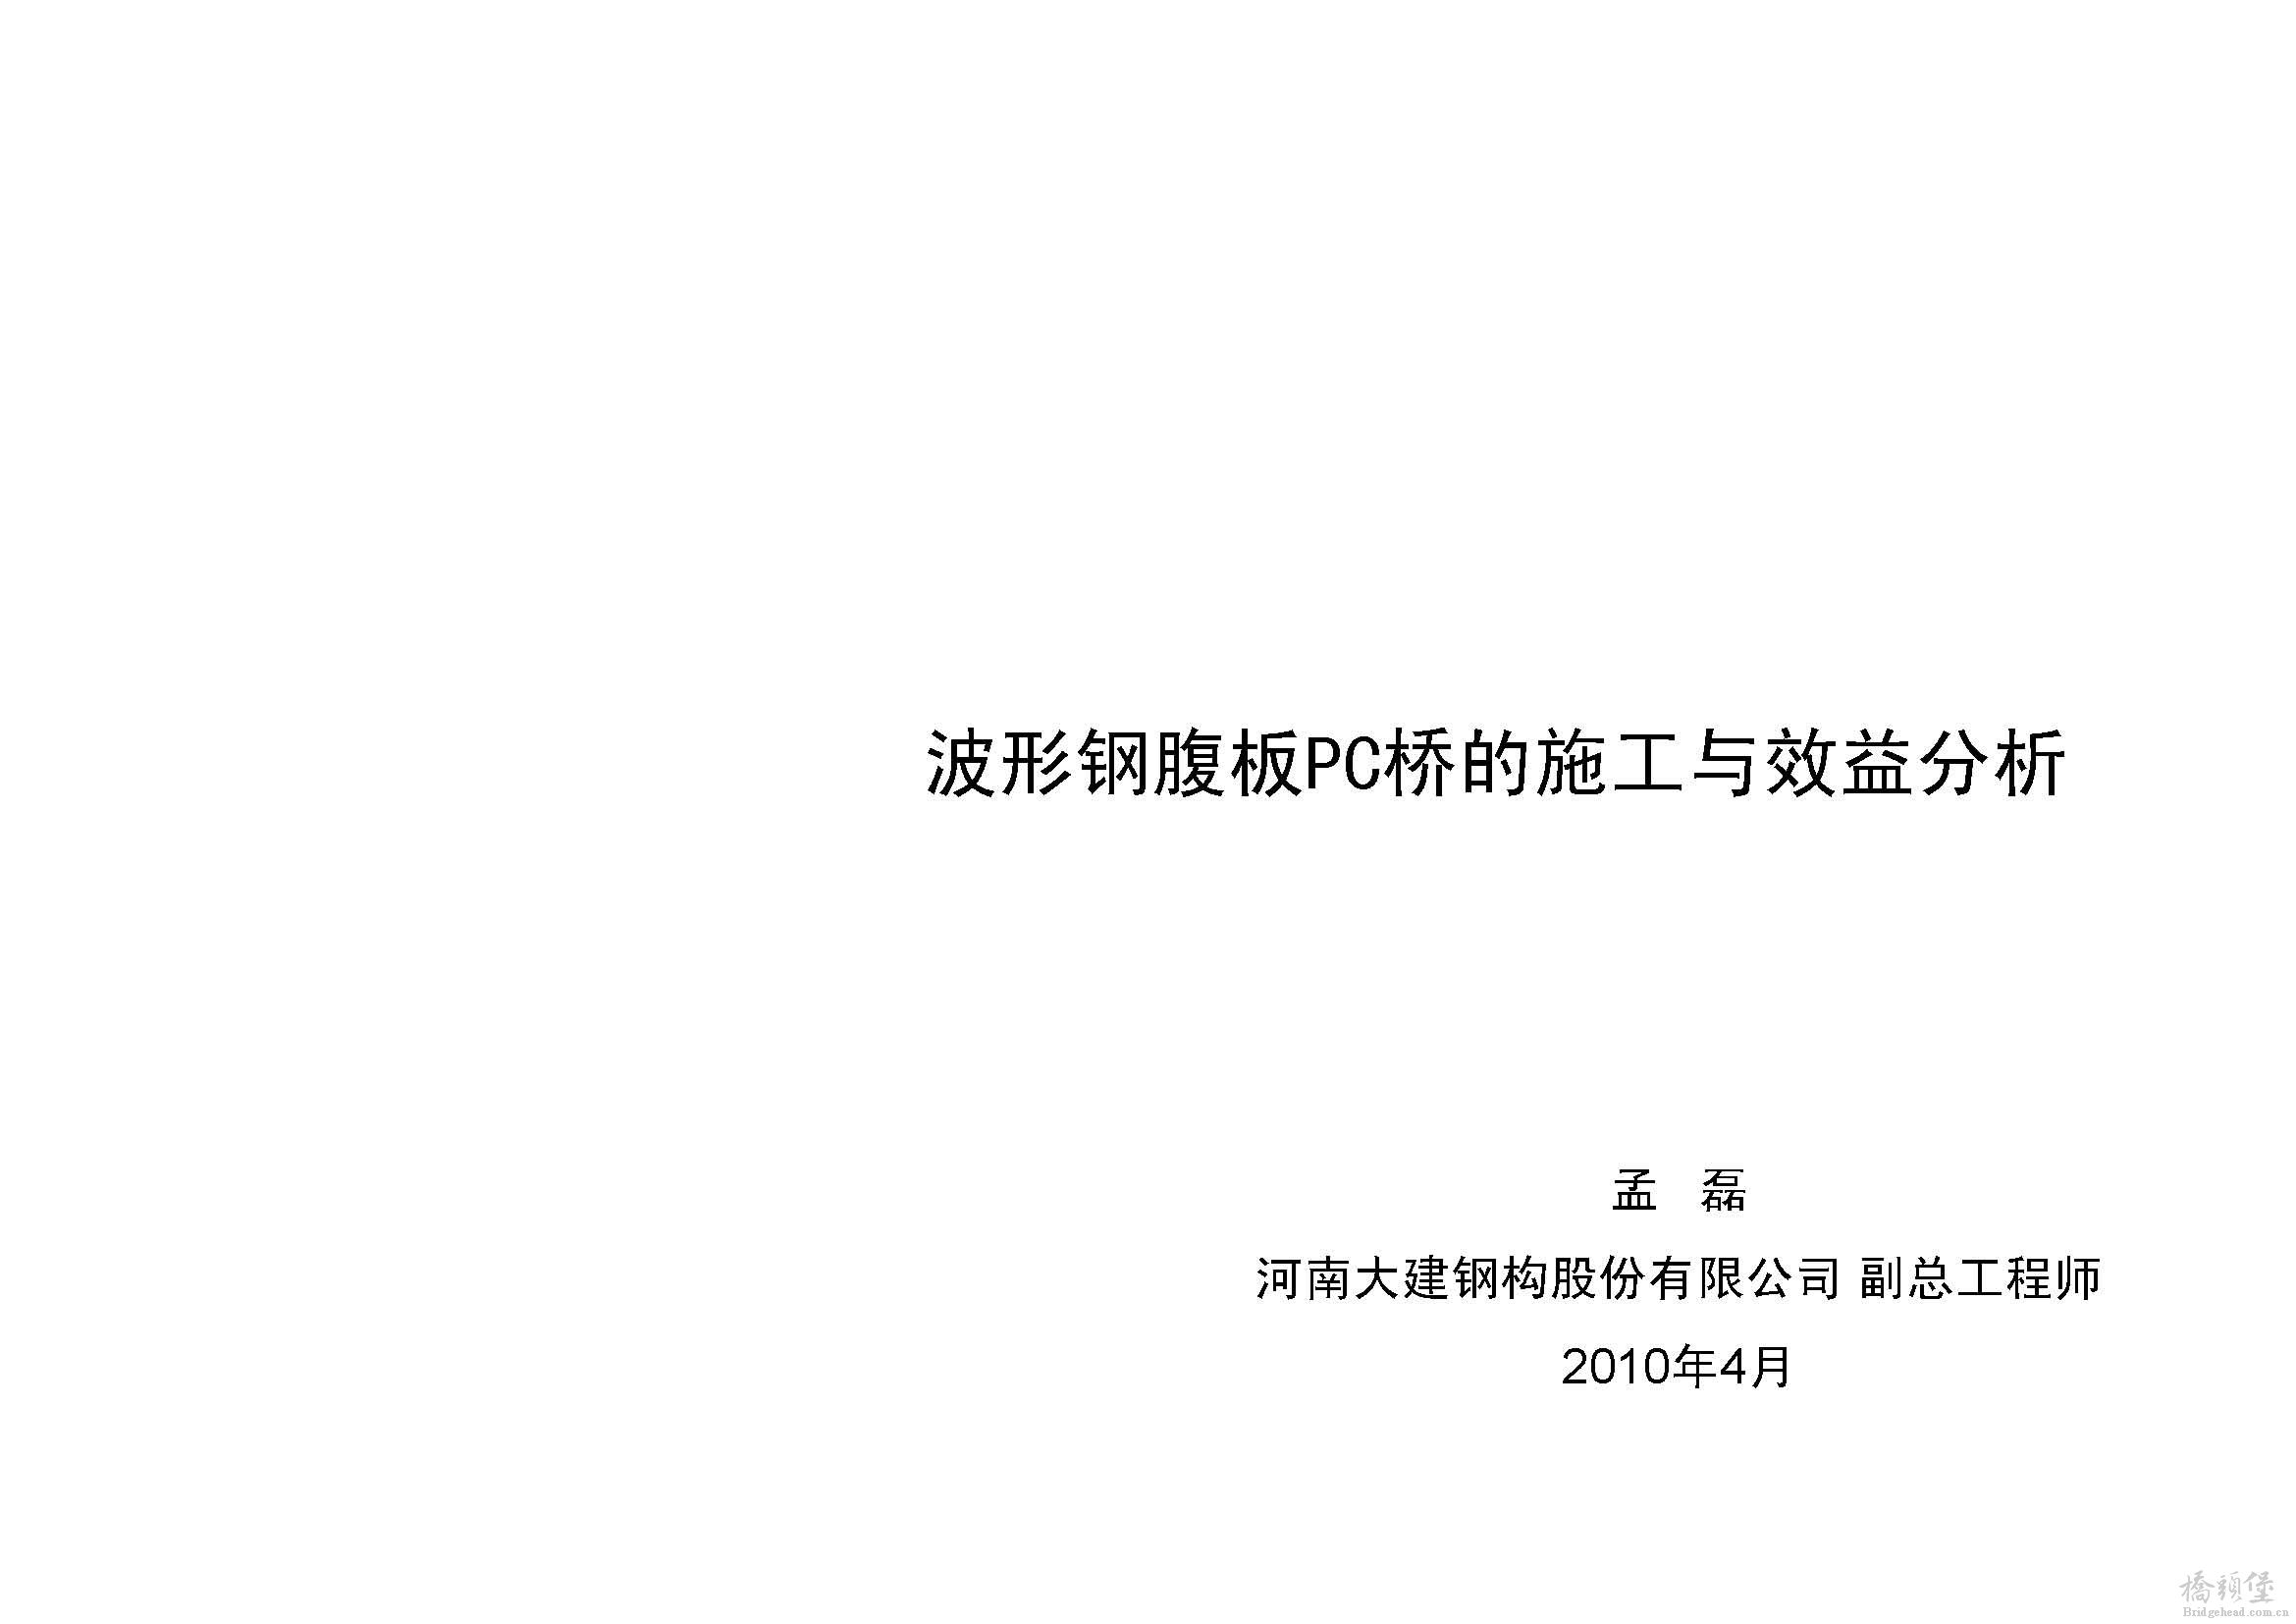 9 宁波会孟磊-波形钢腹板PC桥的施工与效益分析_页面_01.jpg